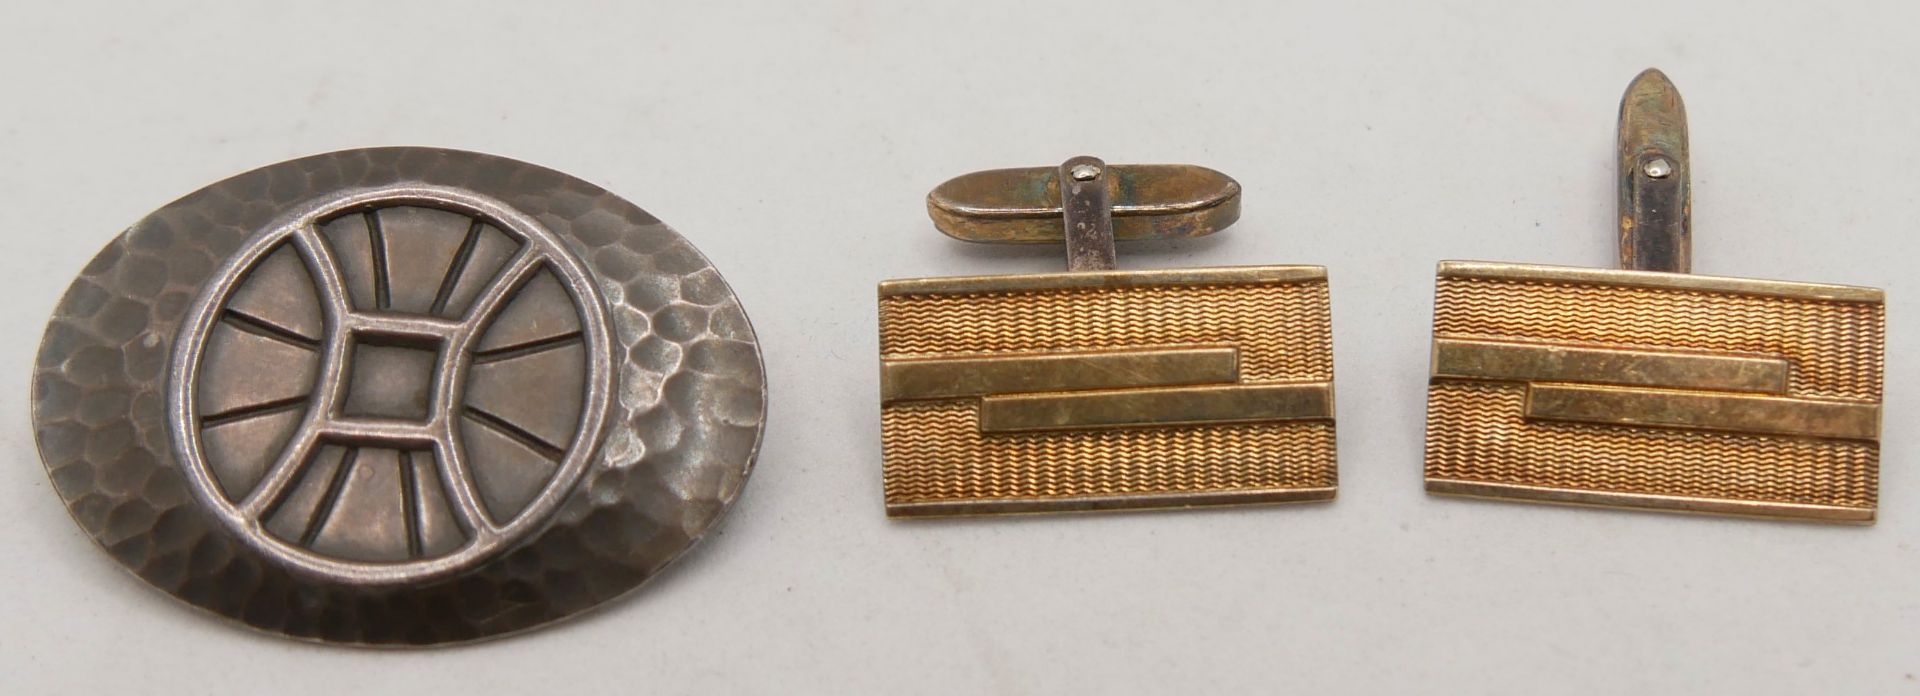 2 Teile Schmuck, dabei Manschettenknöpfe 835er Silber sowie 1 Brosche, hinten mit Gravur: